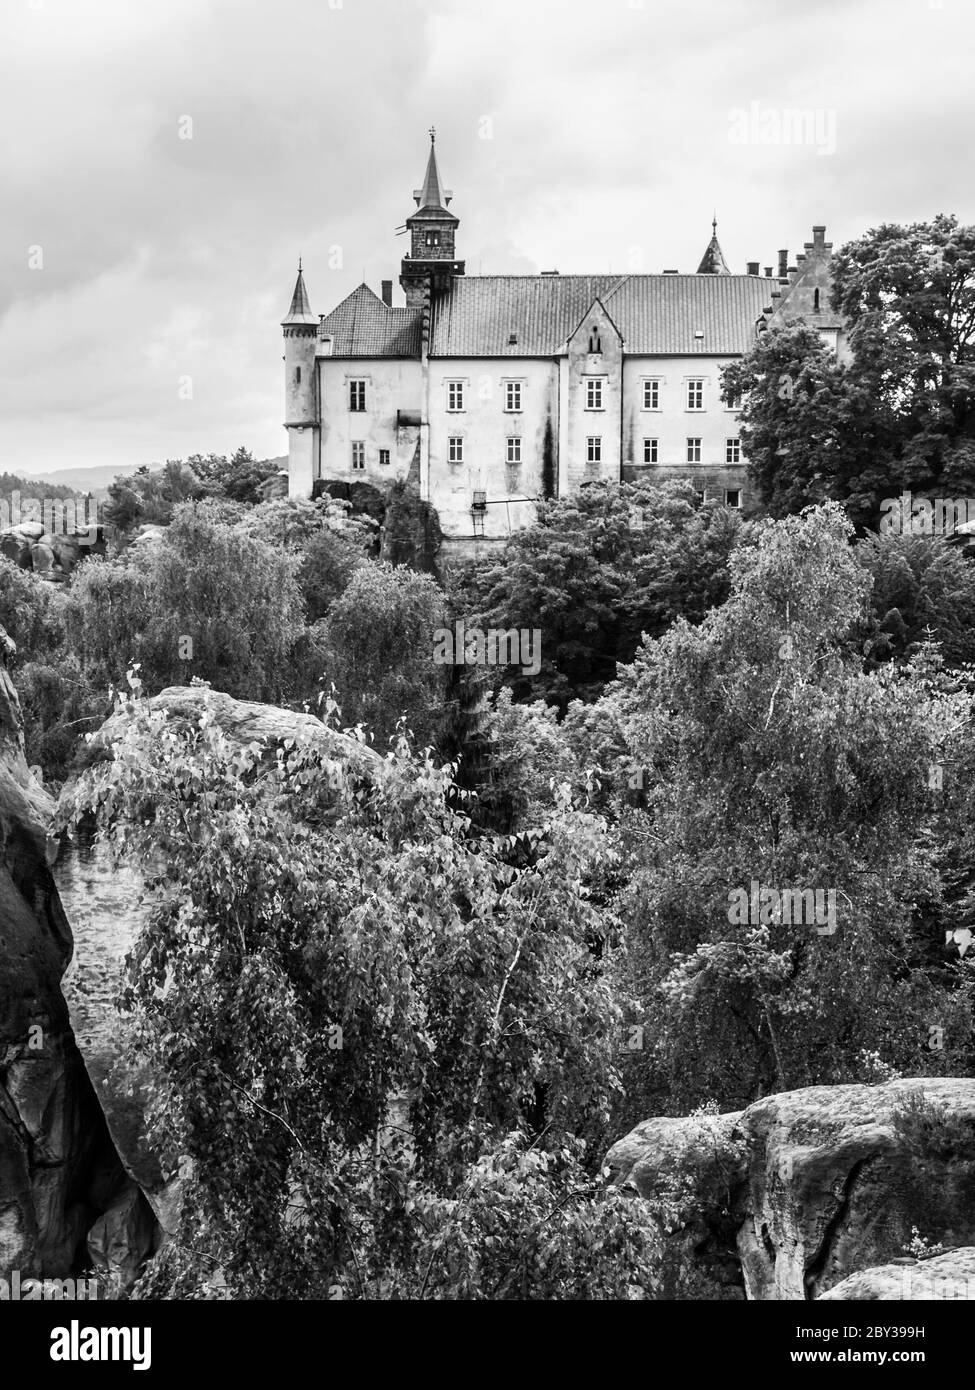 Château médiéval de Hruba Skala situé sur une falaise de grès abrupte dans le Paradis de Bohême, ou Cesky Raj, République tchèque . Image en noir et blanc. Banque D'Images